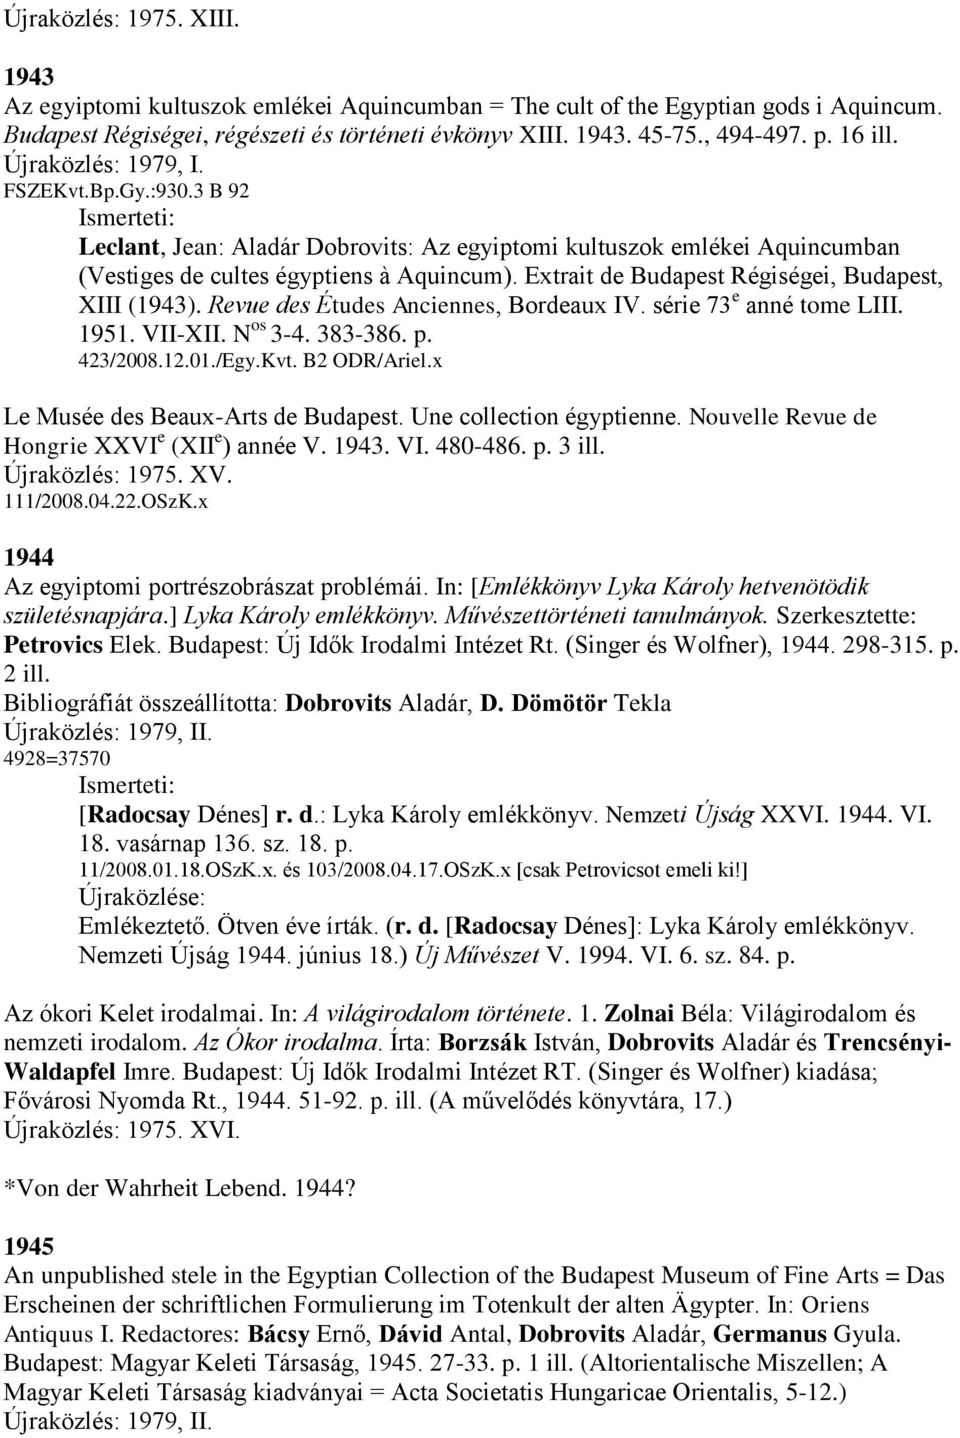 Extrait de Budapest Régiségei, Budapest, XIII (1943). Revue des Études Anciennes, Bordeaux IV. série 73 e anné tome LIII. 1951. VII-XII. N os 3-4. 383-386. p. 423/2008.12.01./Egy.Kvt. B2 ODR/Ariel.